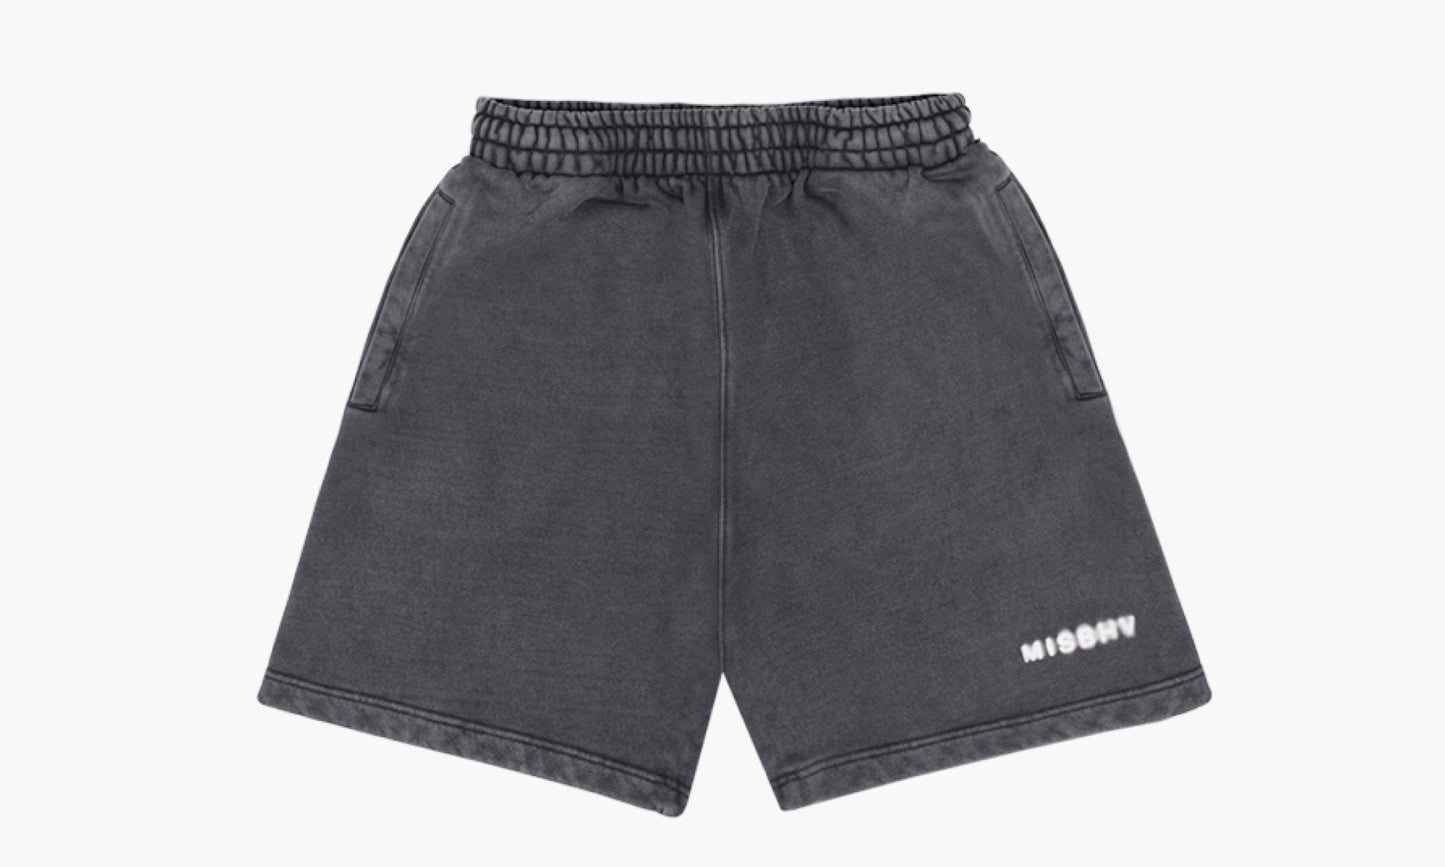 MISBHV Shorts «Washed Black» - 230M353 | Grailshop